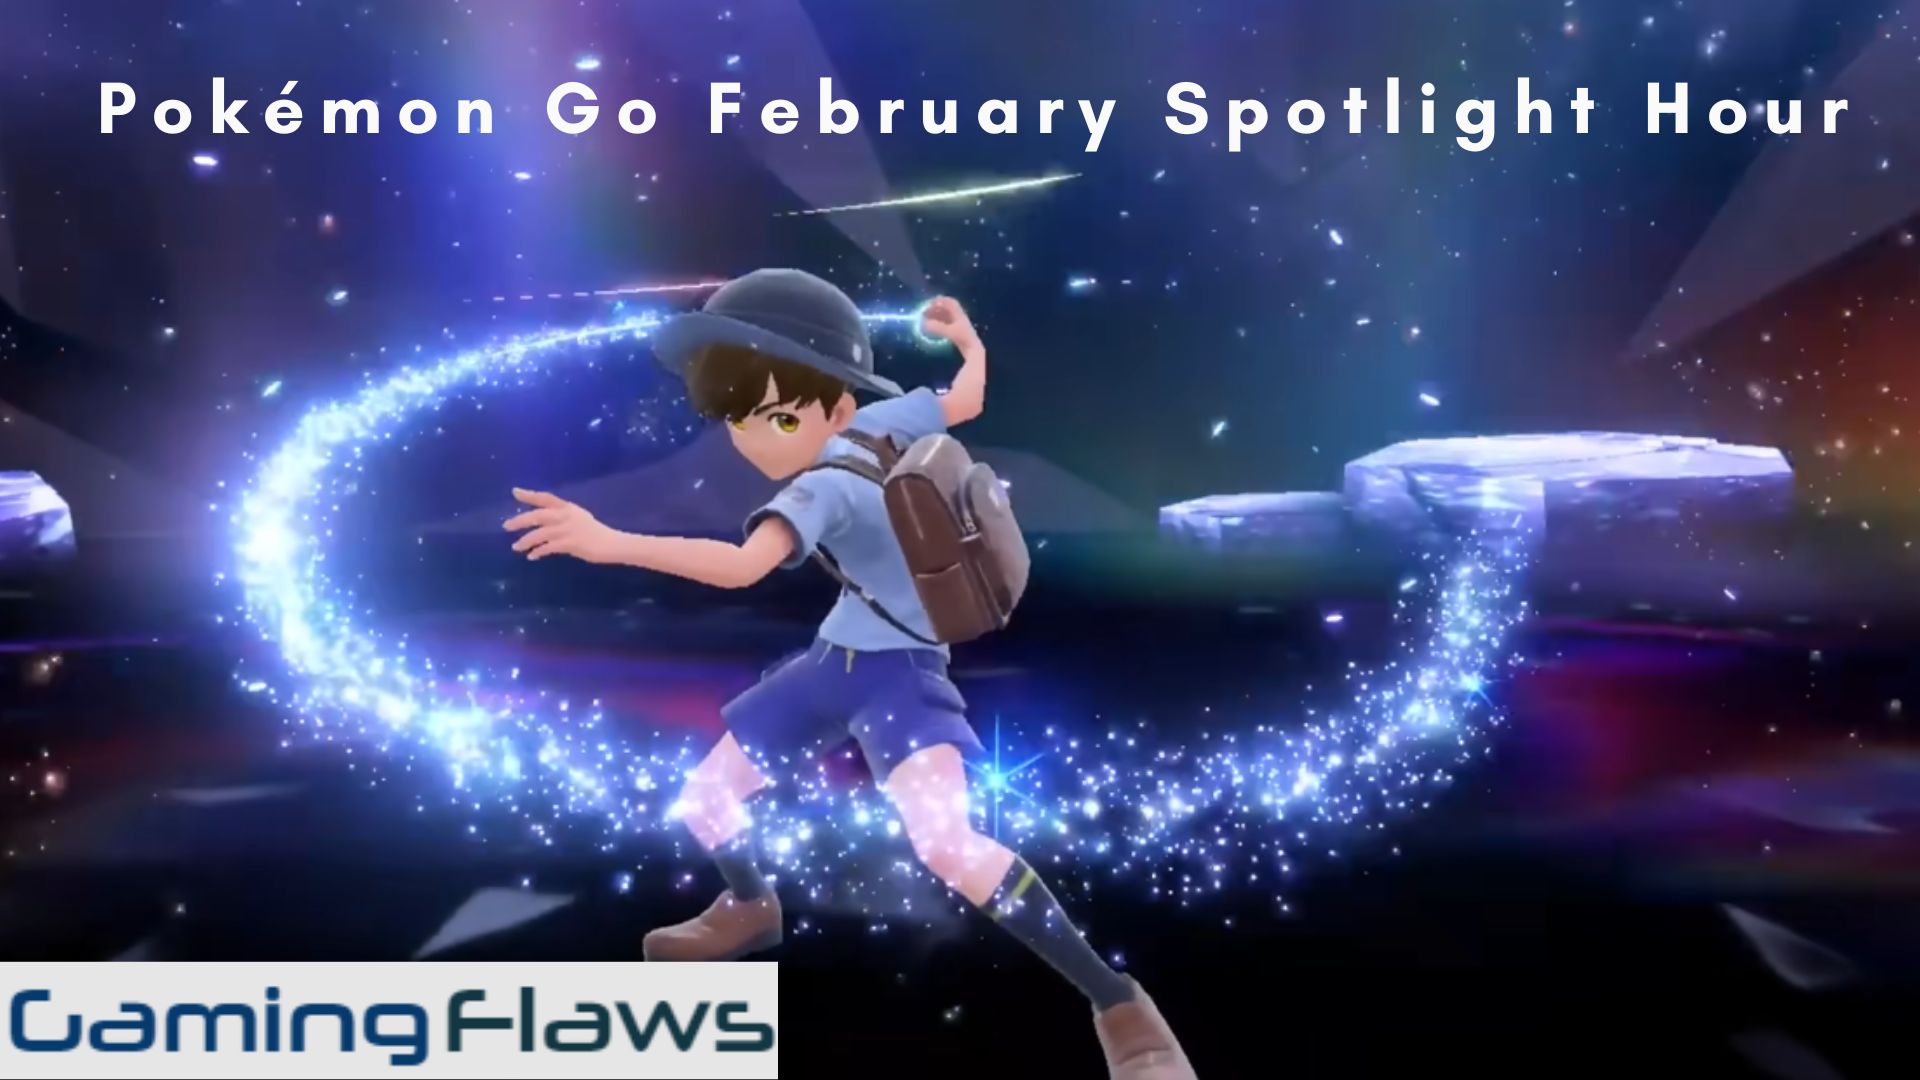 Pokémon Go February Spotlight Hour